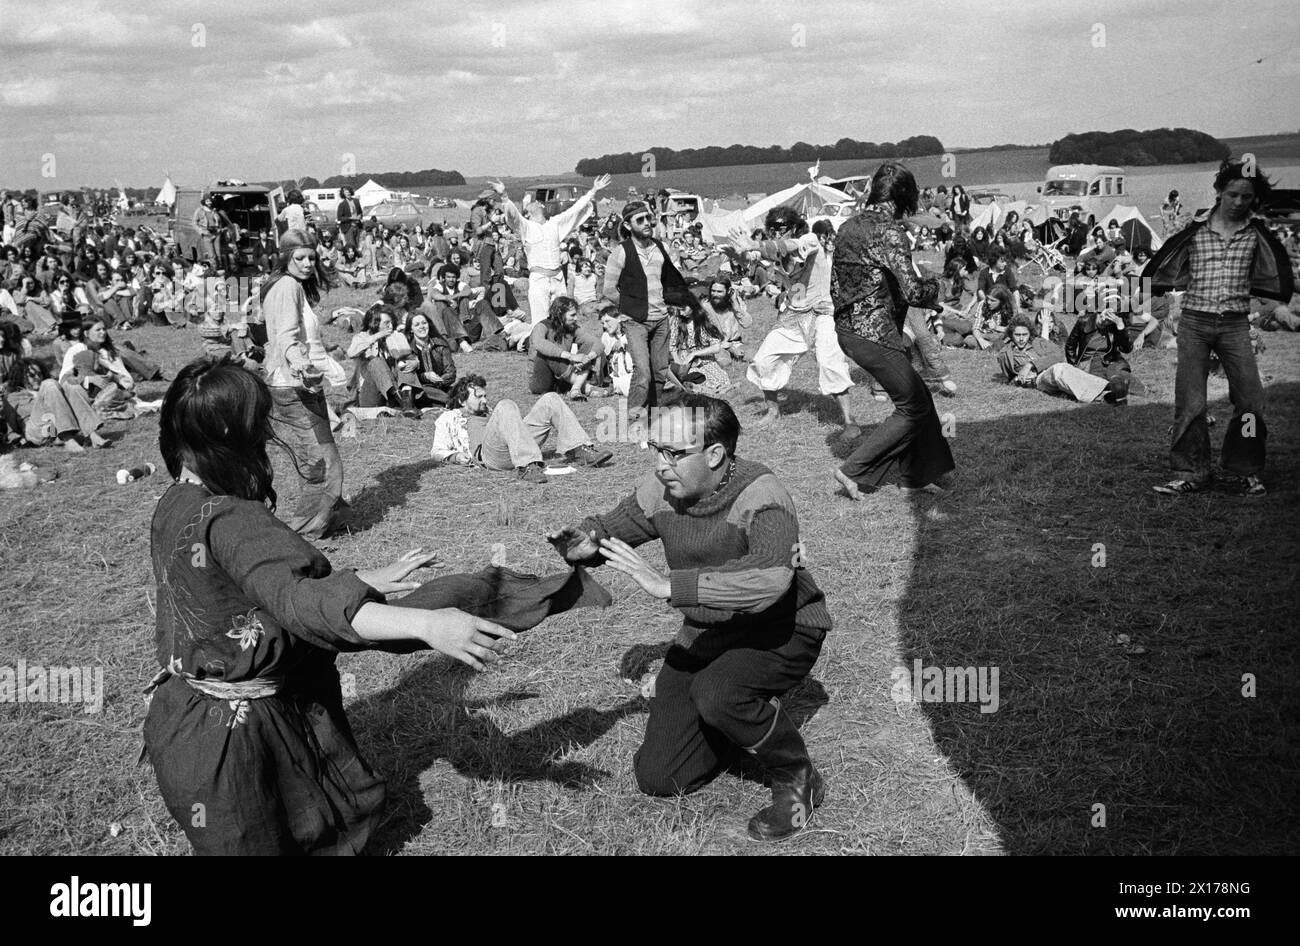 Les festivaliers dansent, d'autres assis autour de regarder. Stonehenge Free Festival - Festival Pop - au solstice d'été, Wiltshire, Angleterre vers juin 1976. ANNÉES 1970 ROYAUME-UNI HOMER SYKES Banque D'Images